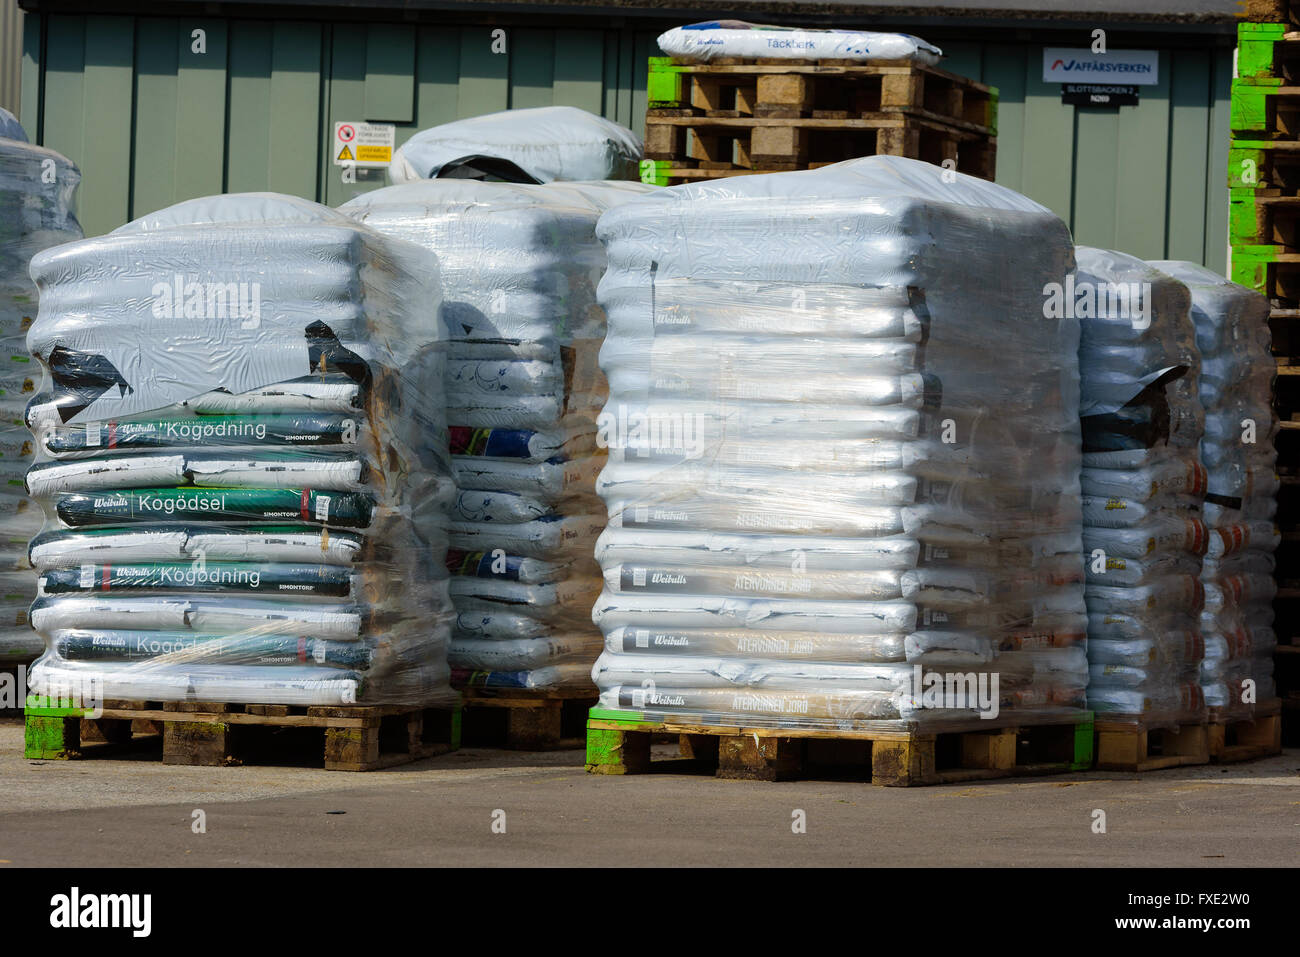 Lyckeby, Suecia, 7 de abril de 2016: palets de plástico envuelto el suelo y las bolsas de fertilizantes almacena detrás de una tienda en el área pública. Foto de stock